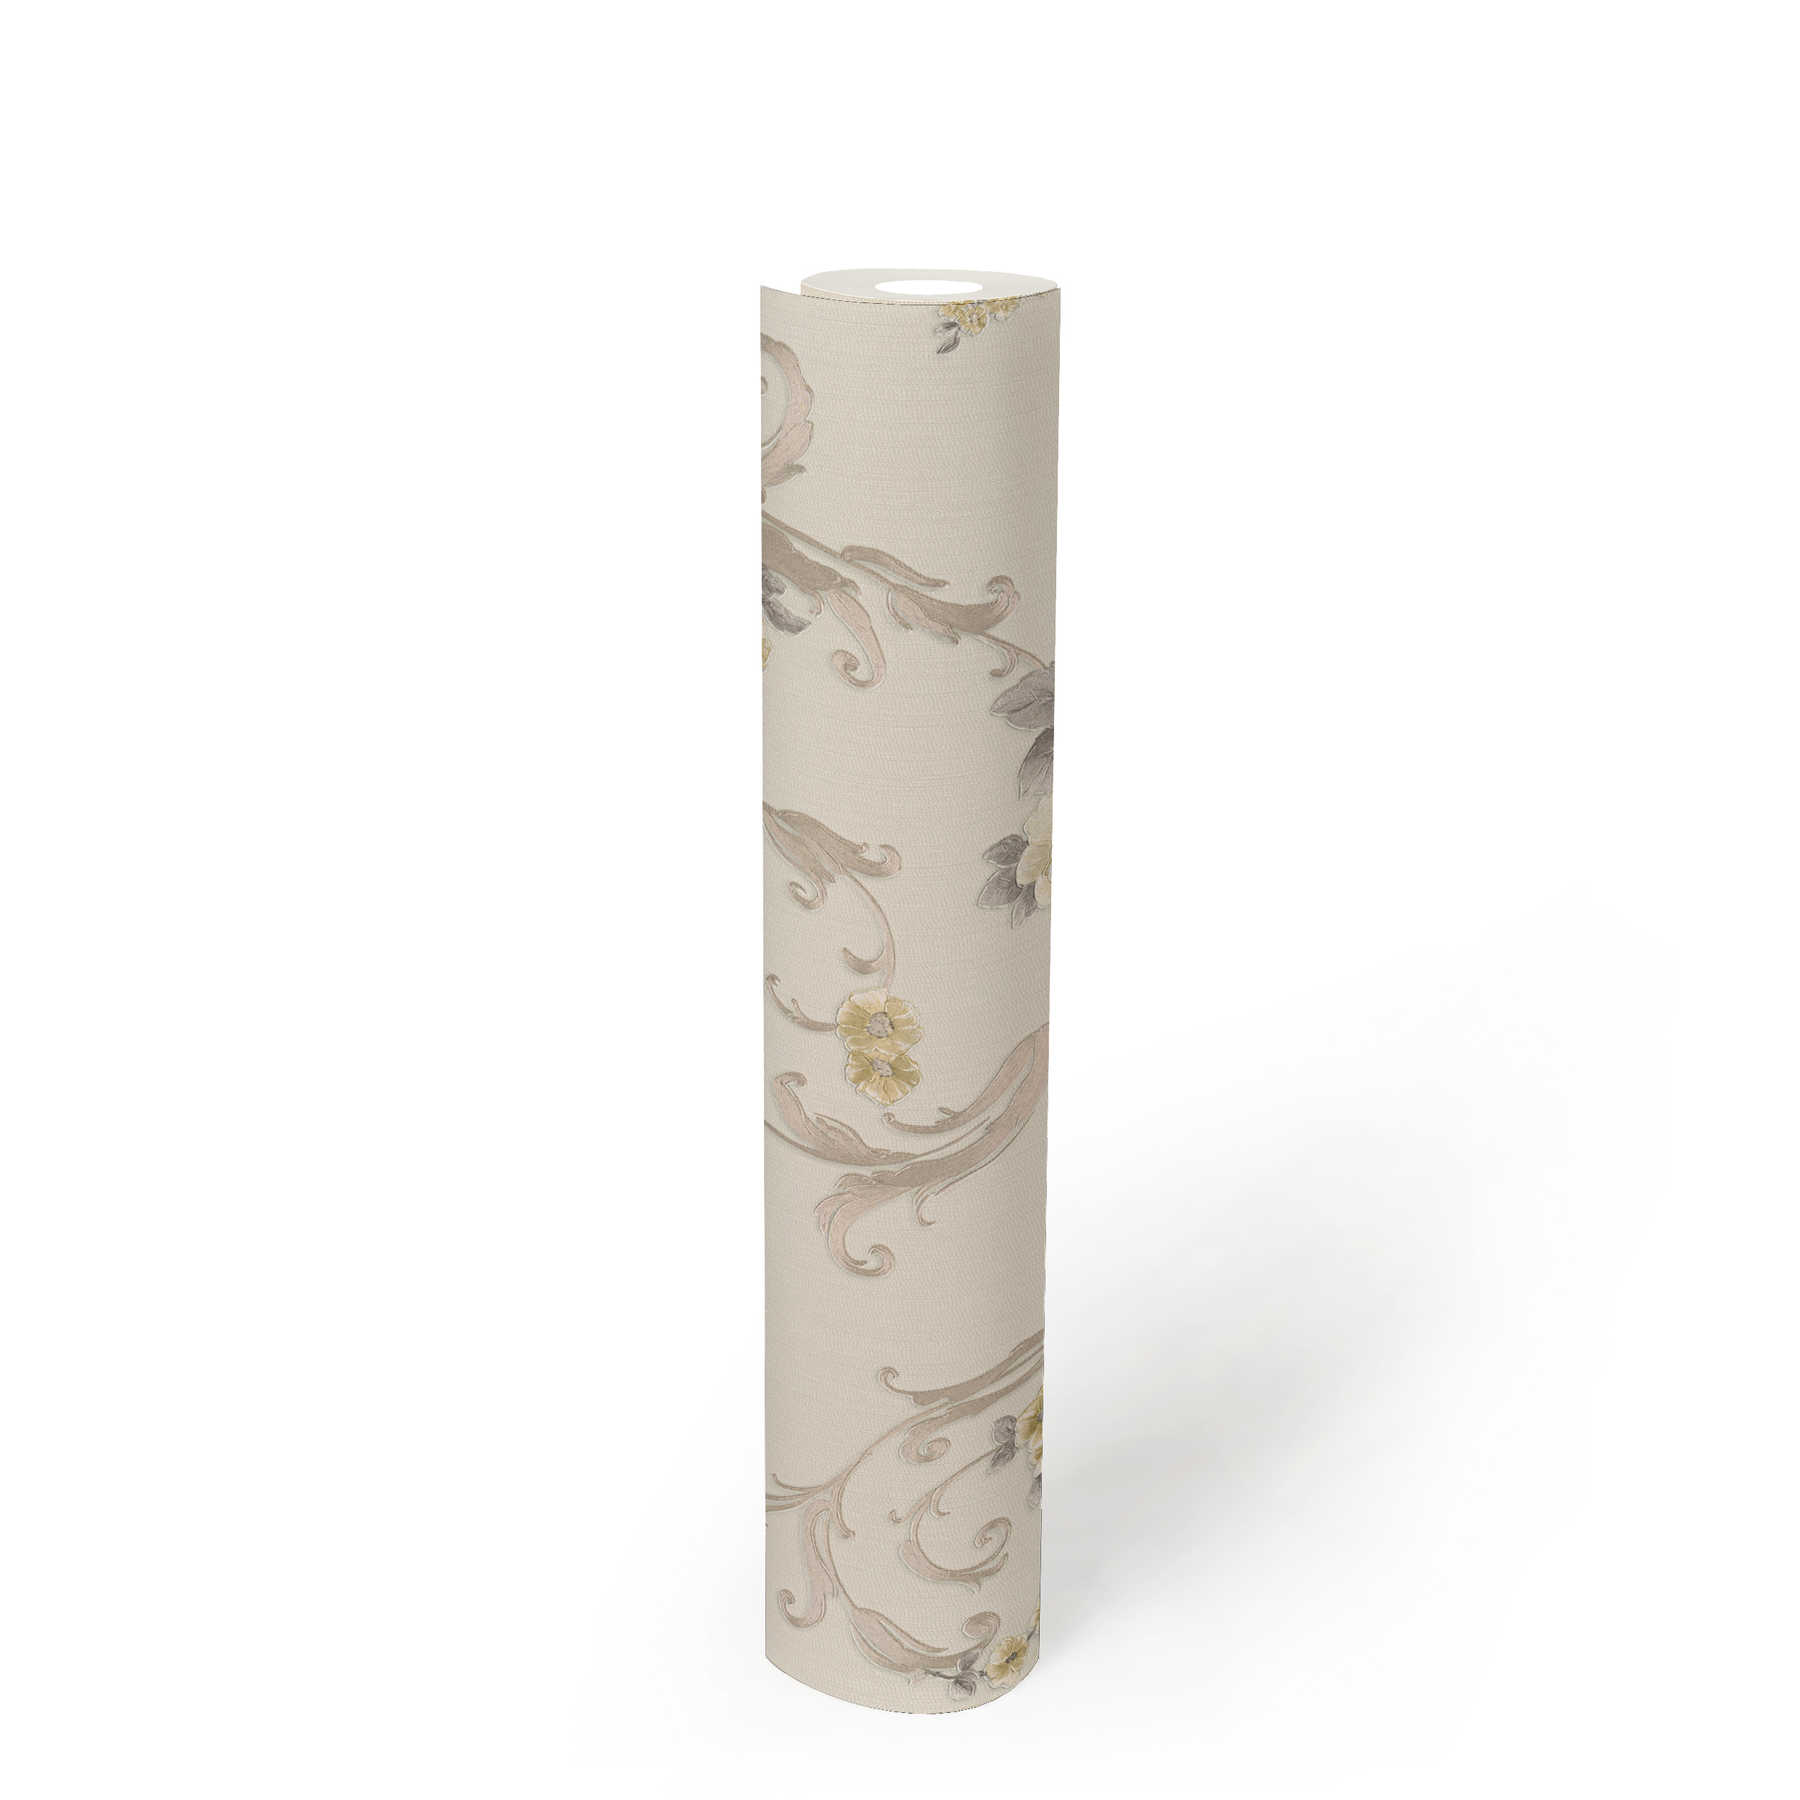             Rosenblüten-Tapete mit Metallic-Effekt im Landhausstil – Grau, Gold, Weiß
        